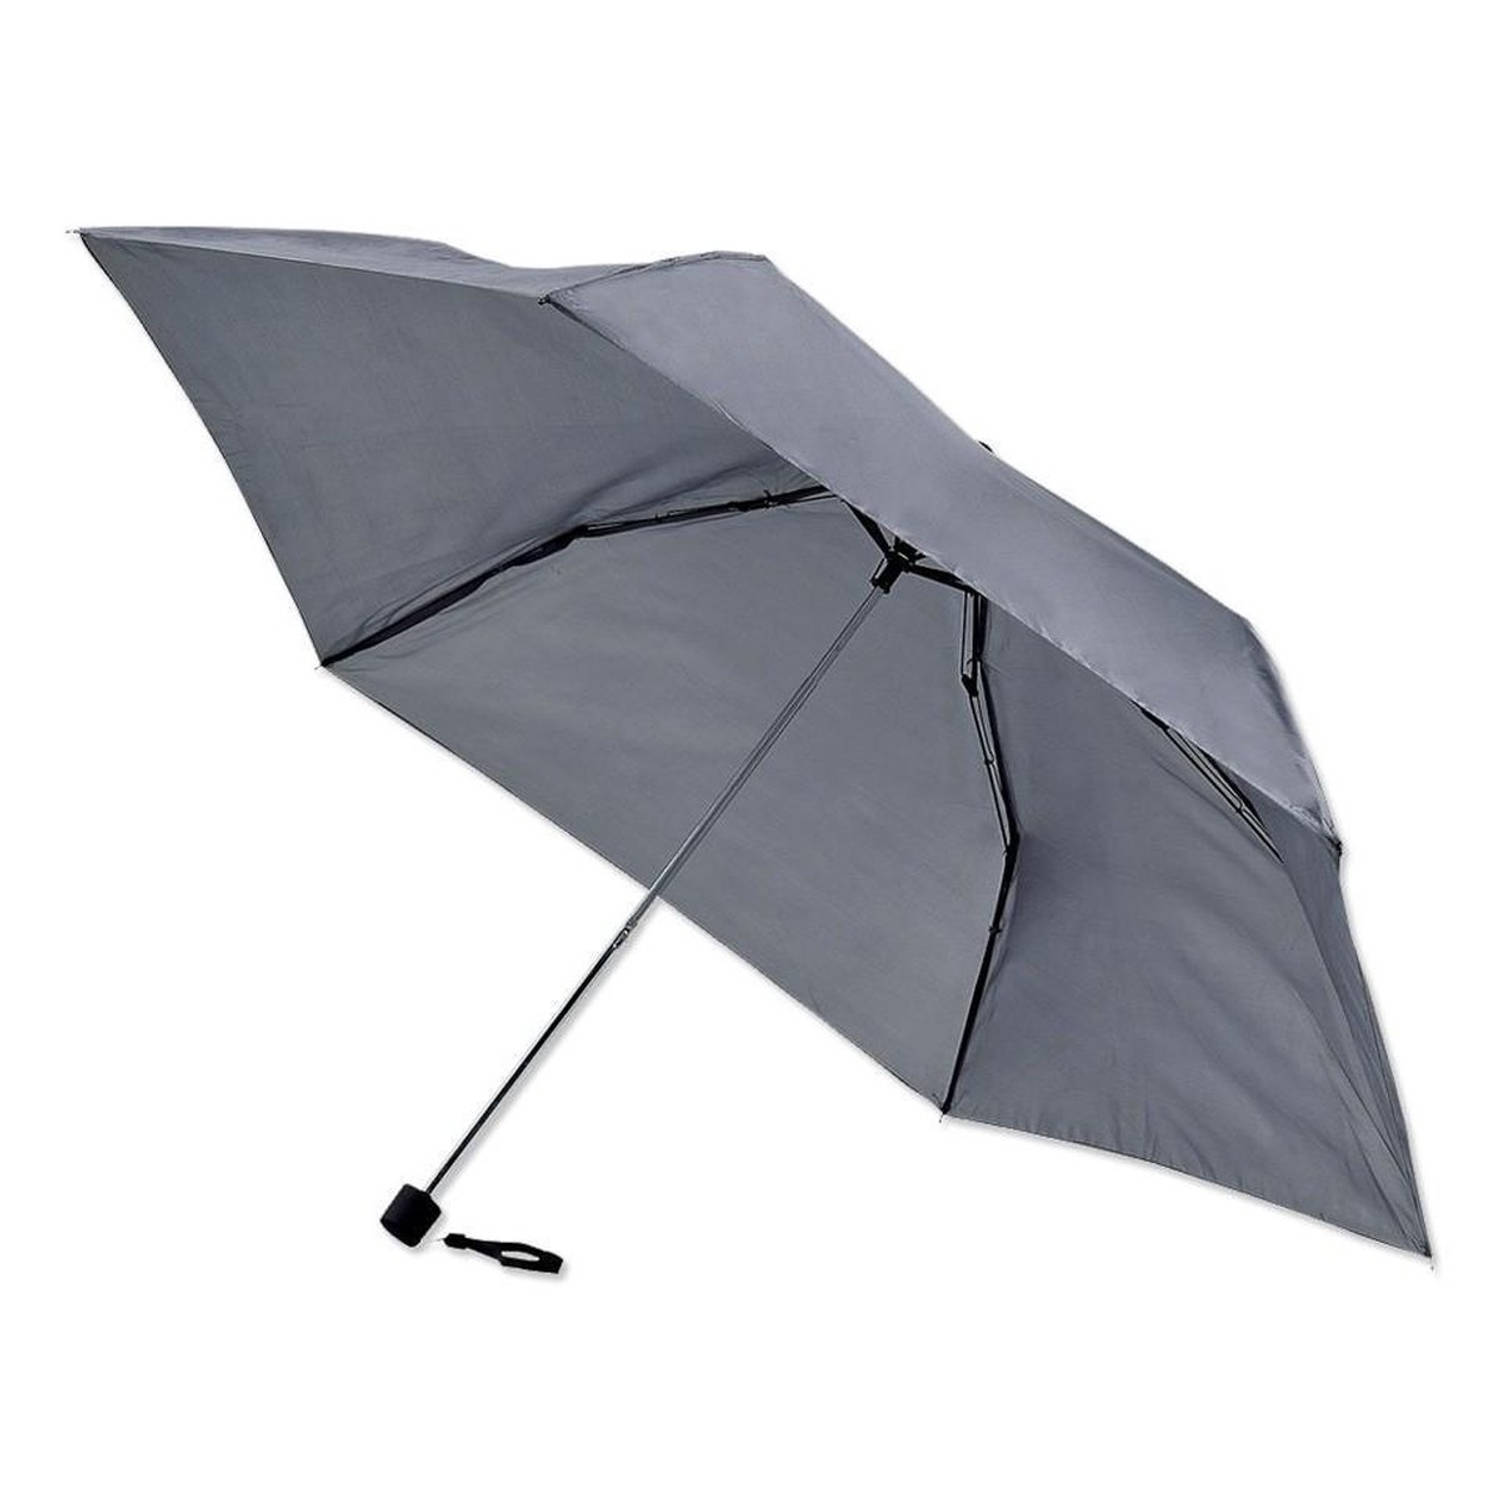 Opvouwbaar - Automatic paraplu - Stevig paraplu - Ø 110 cm - Zwart